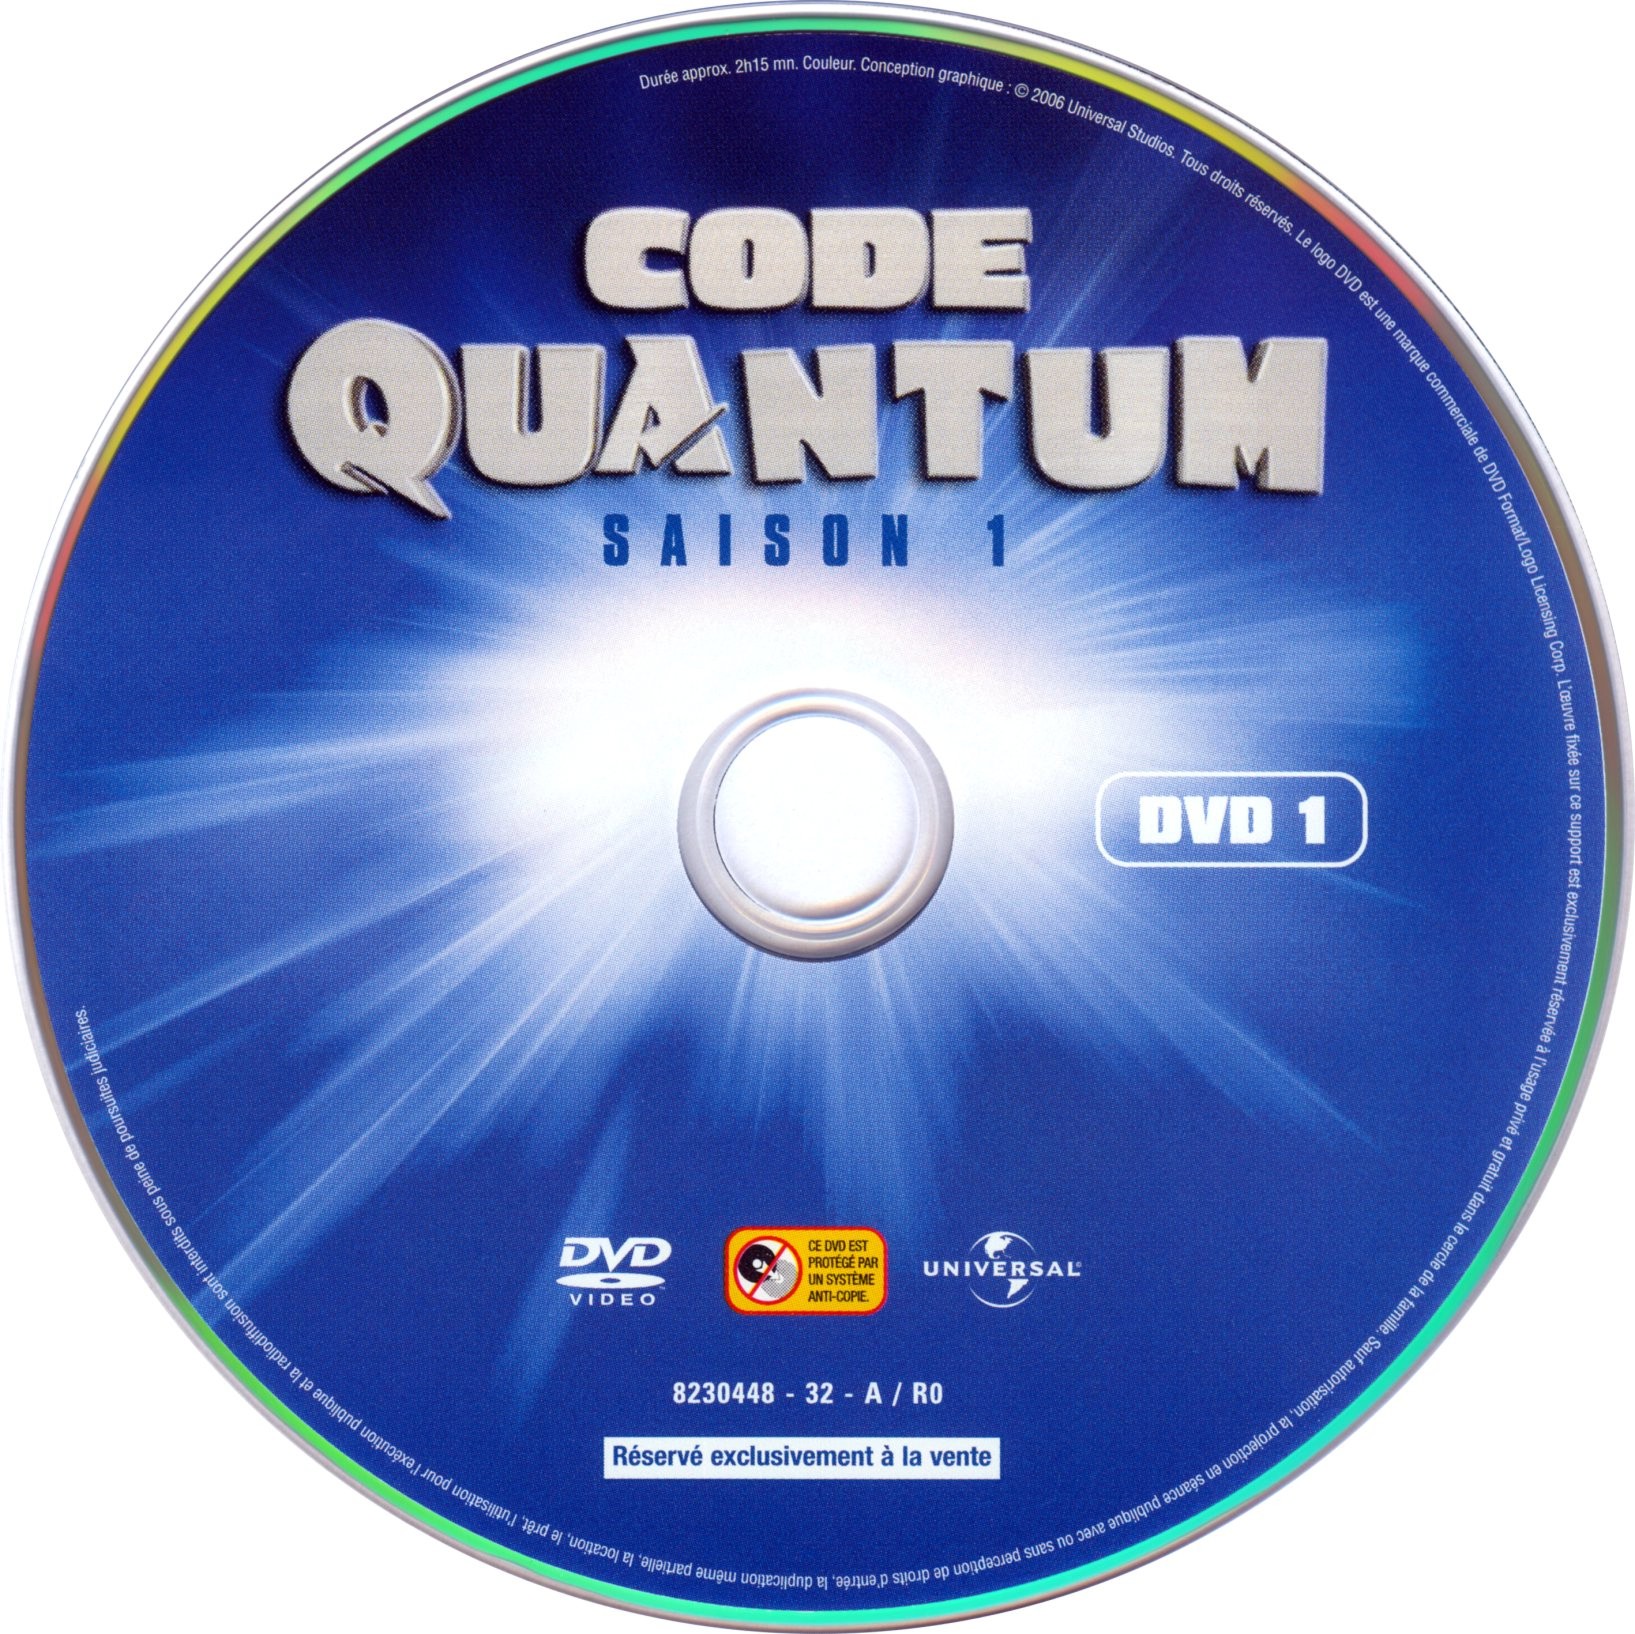 Code Quantum Saison 1 DVD1